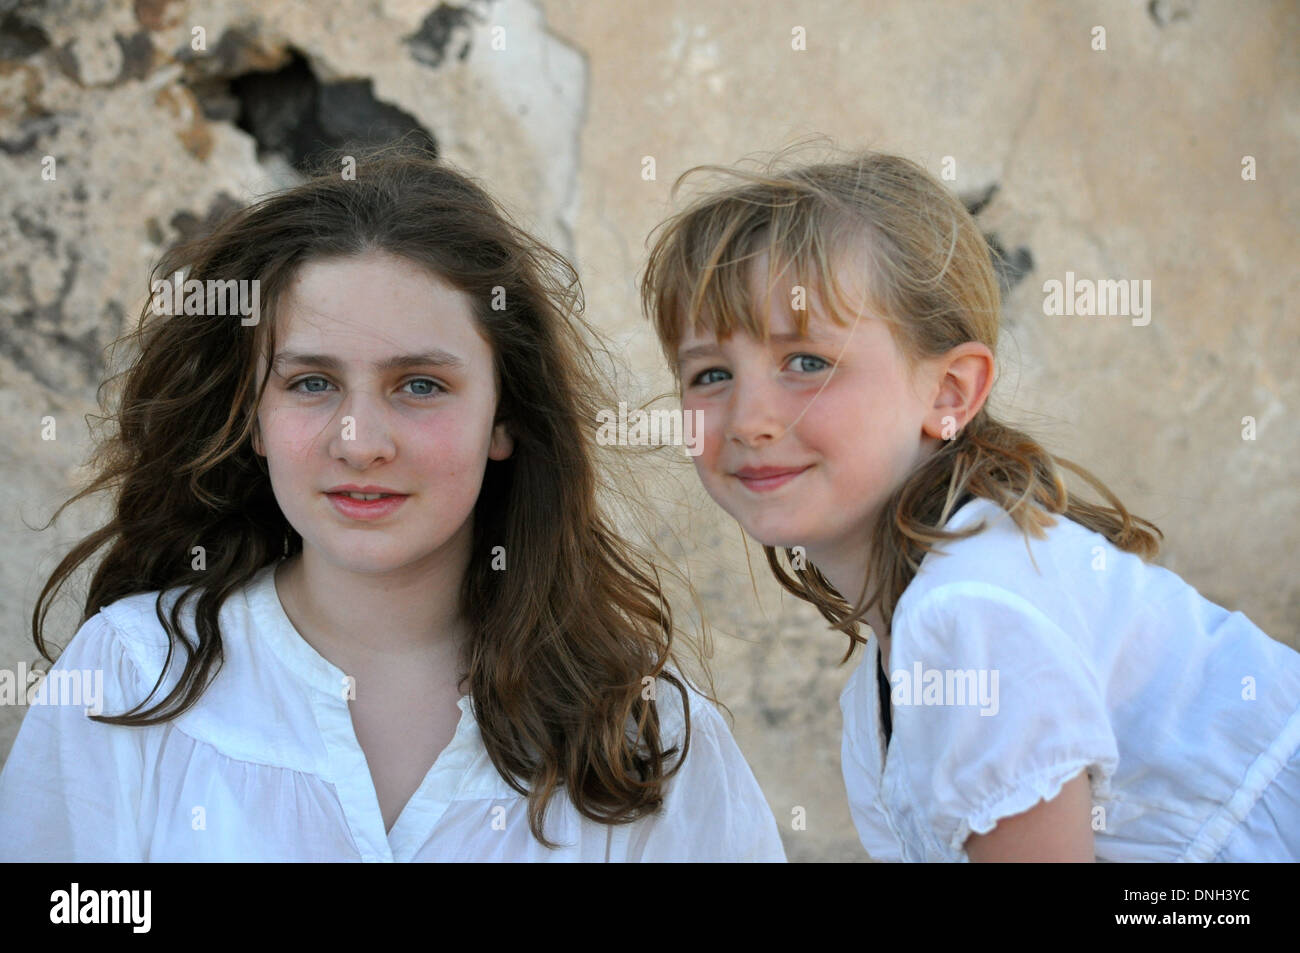 Retrato de dos hermanas con diferente color marrón y el pelo rubio para ilustrar la rivalidad entre hermanos Foto de stock